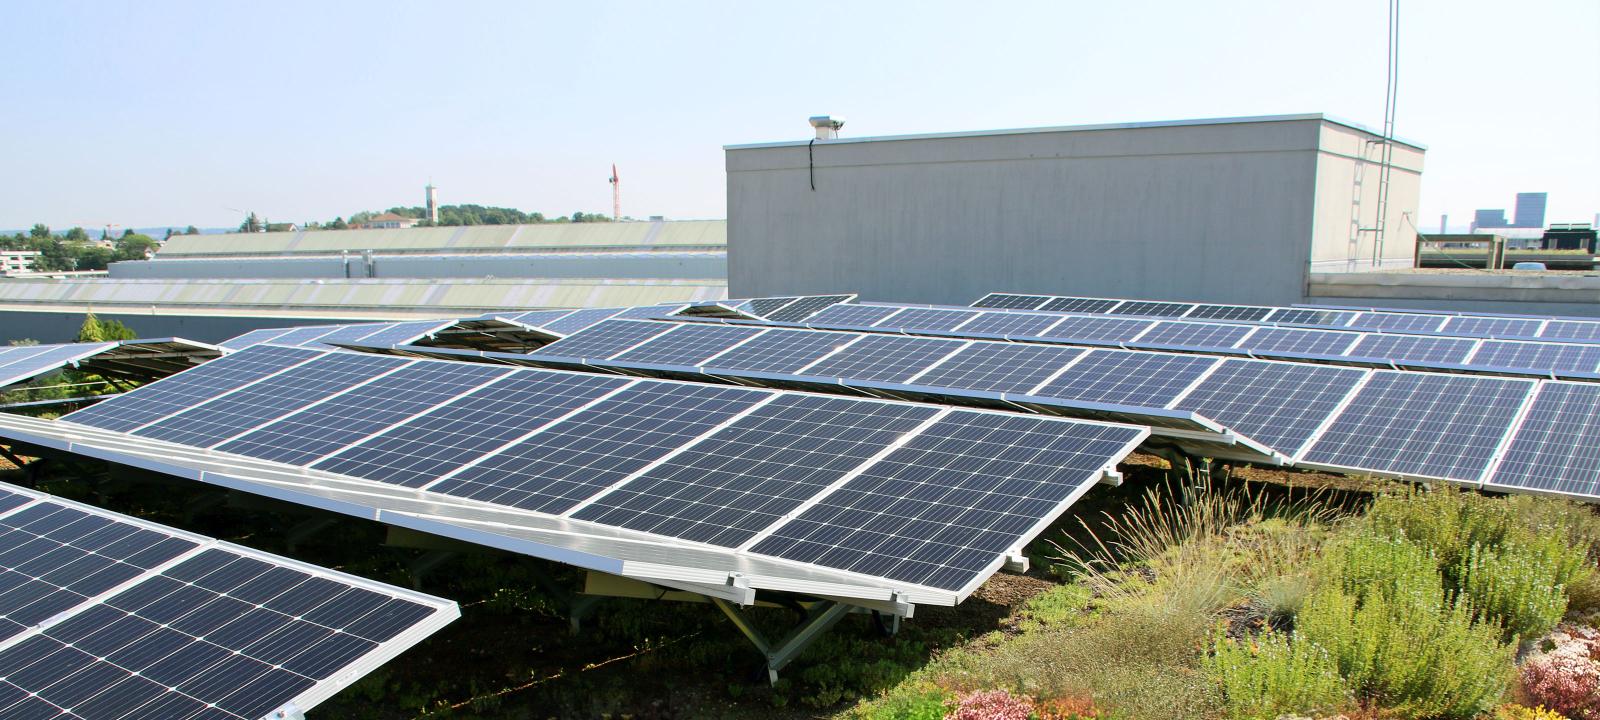 Végétalisation de toit avec Sedum et solaire